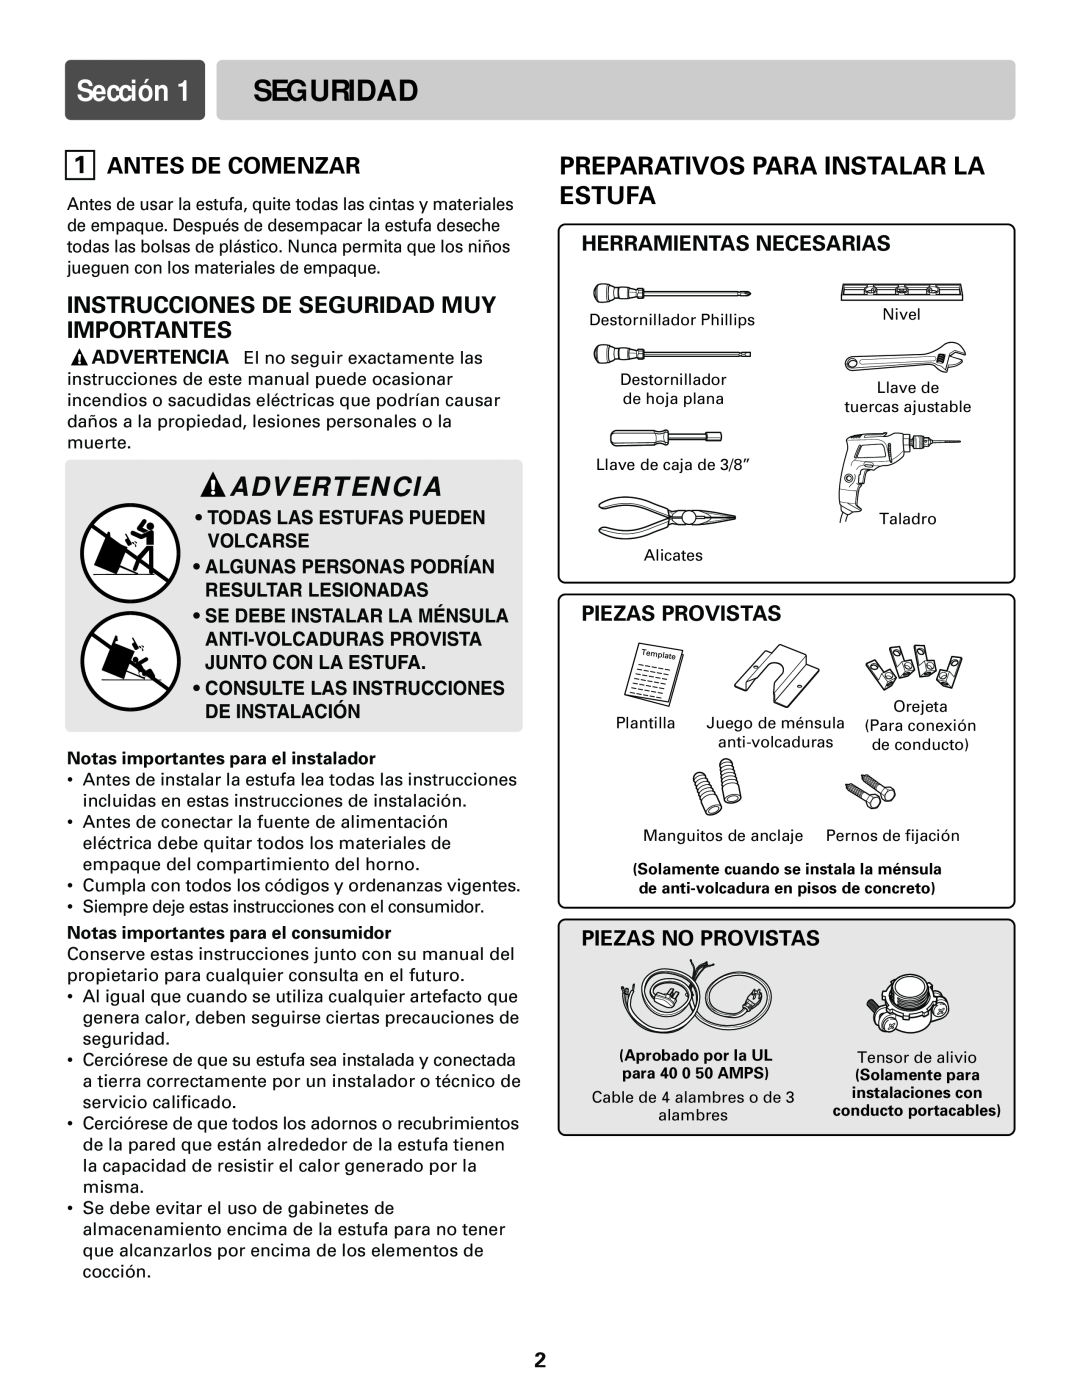 LG Electronics LRE30755S Sección, Advertencia, Preparativos Para Instalar La Estufa, Antes De Comenzar, Piezas Provistas 